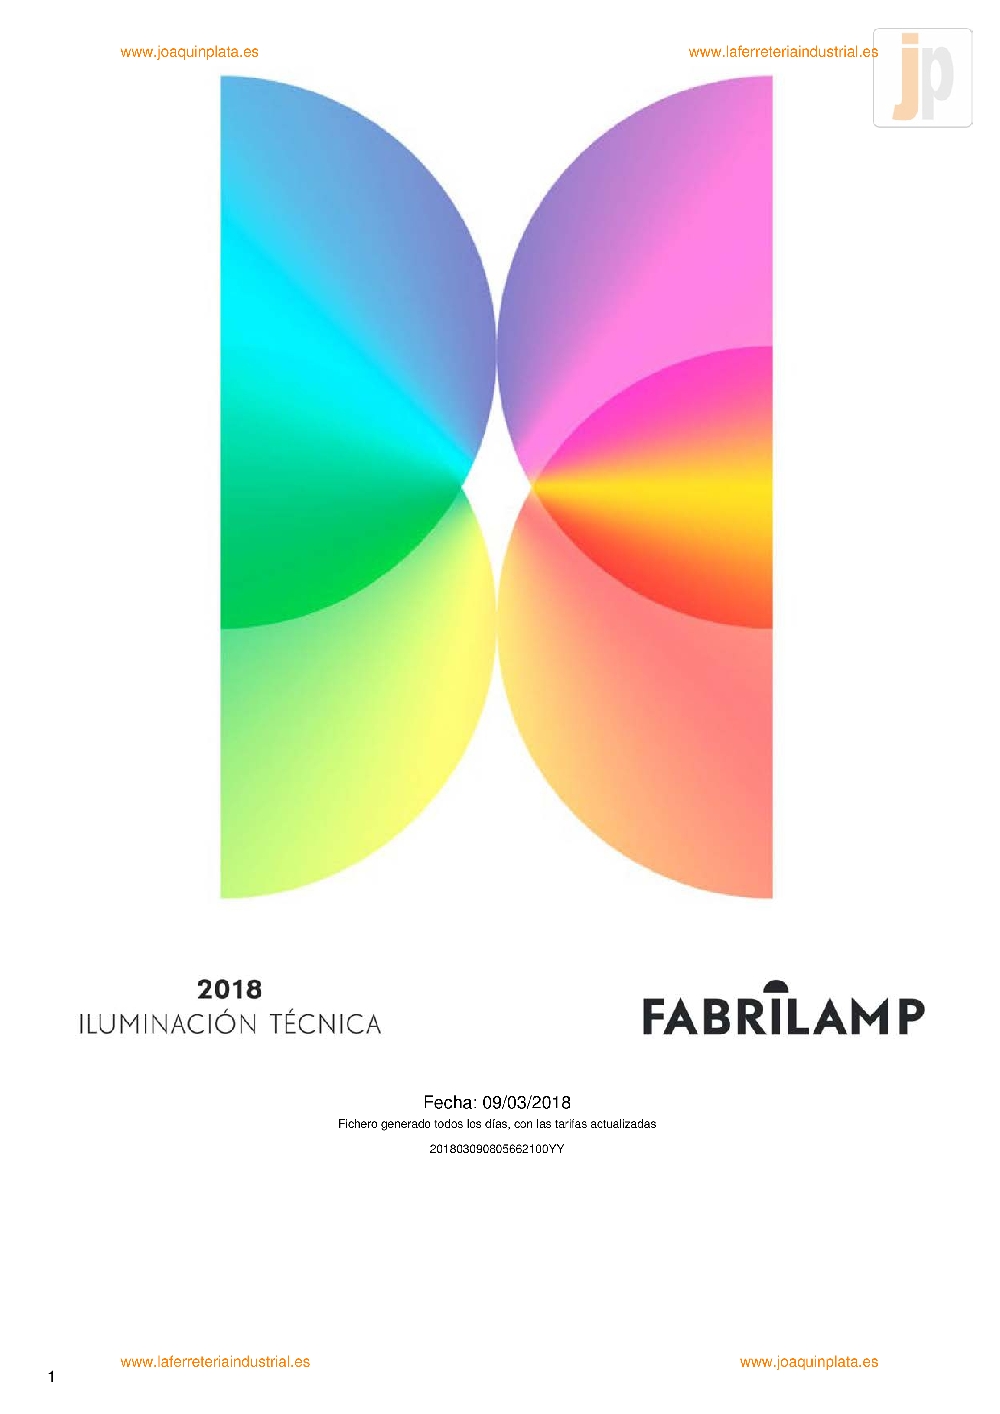 Fabrilamp Iluminación técnica TAR2018